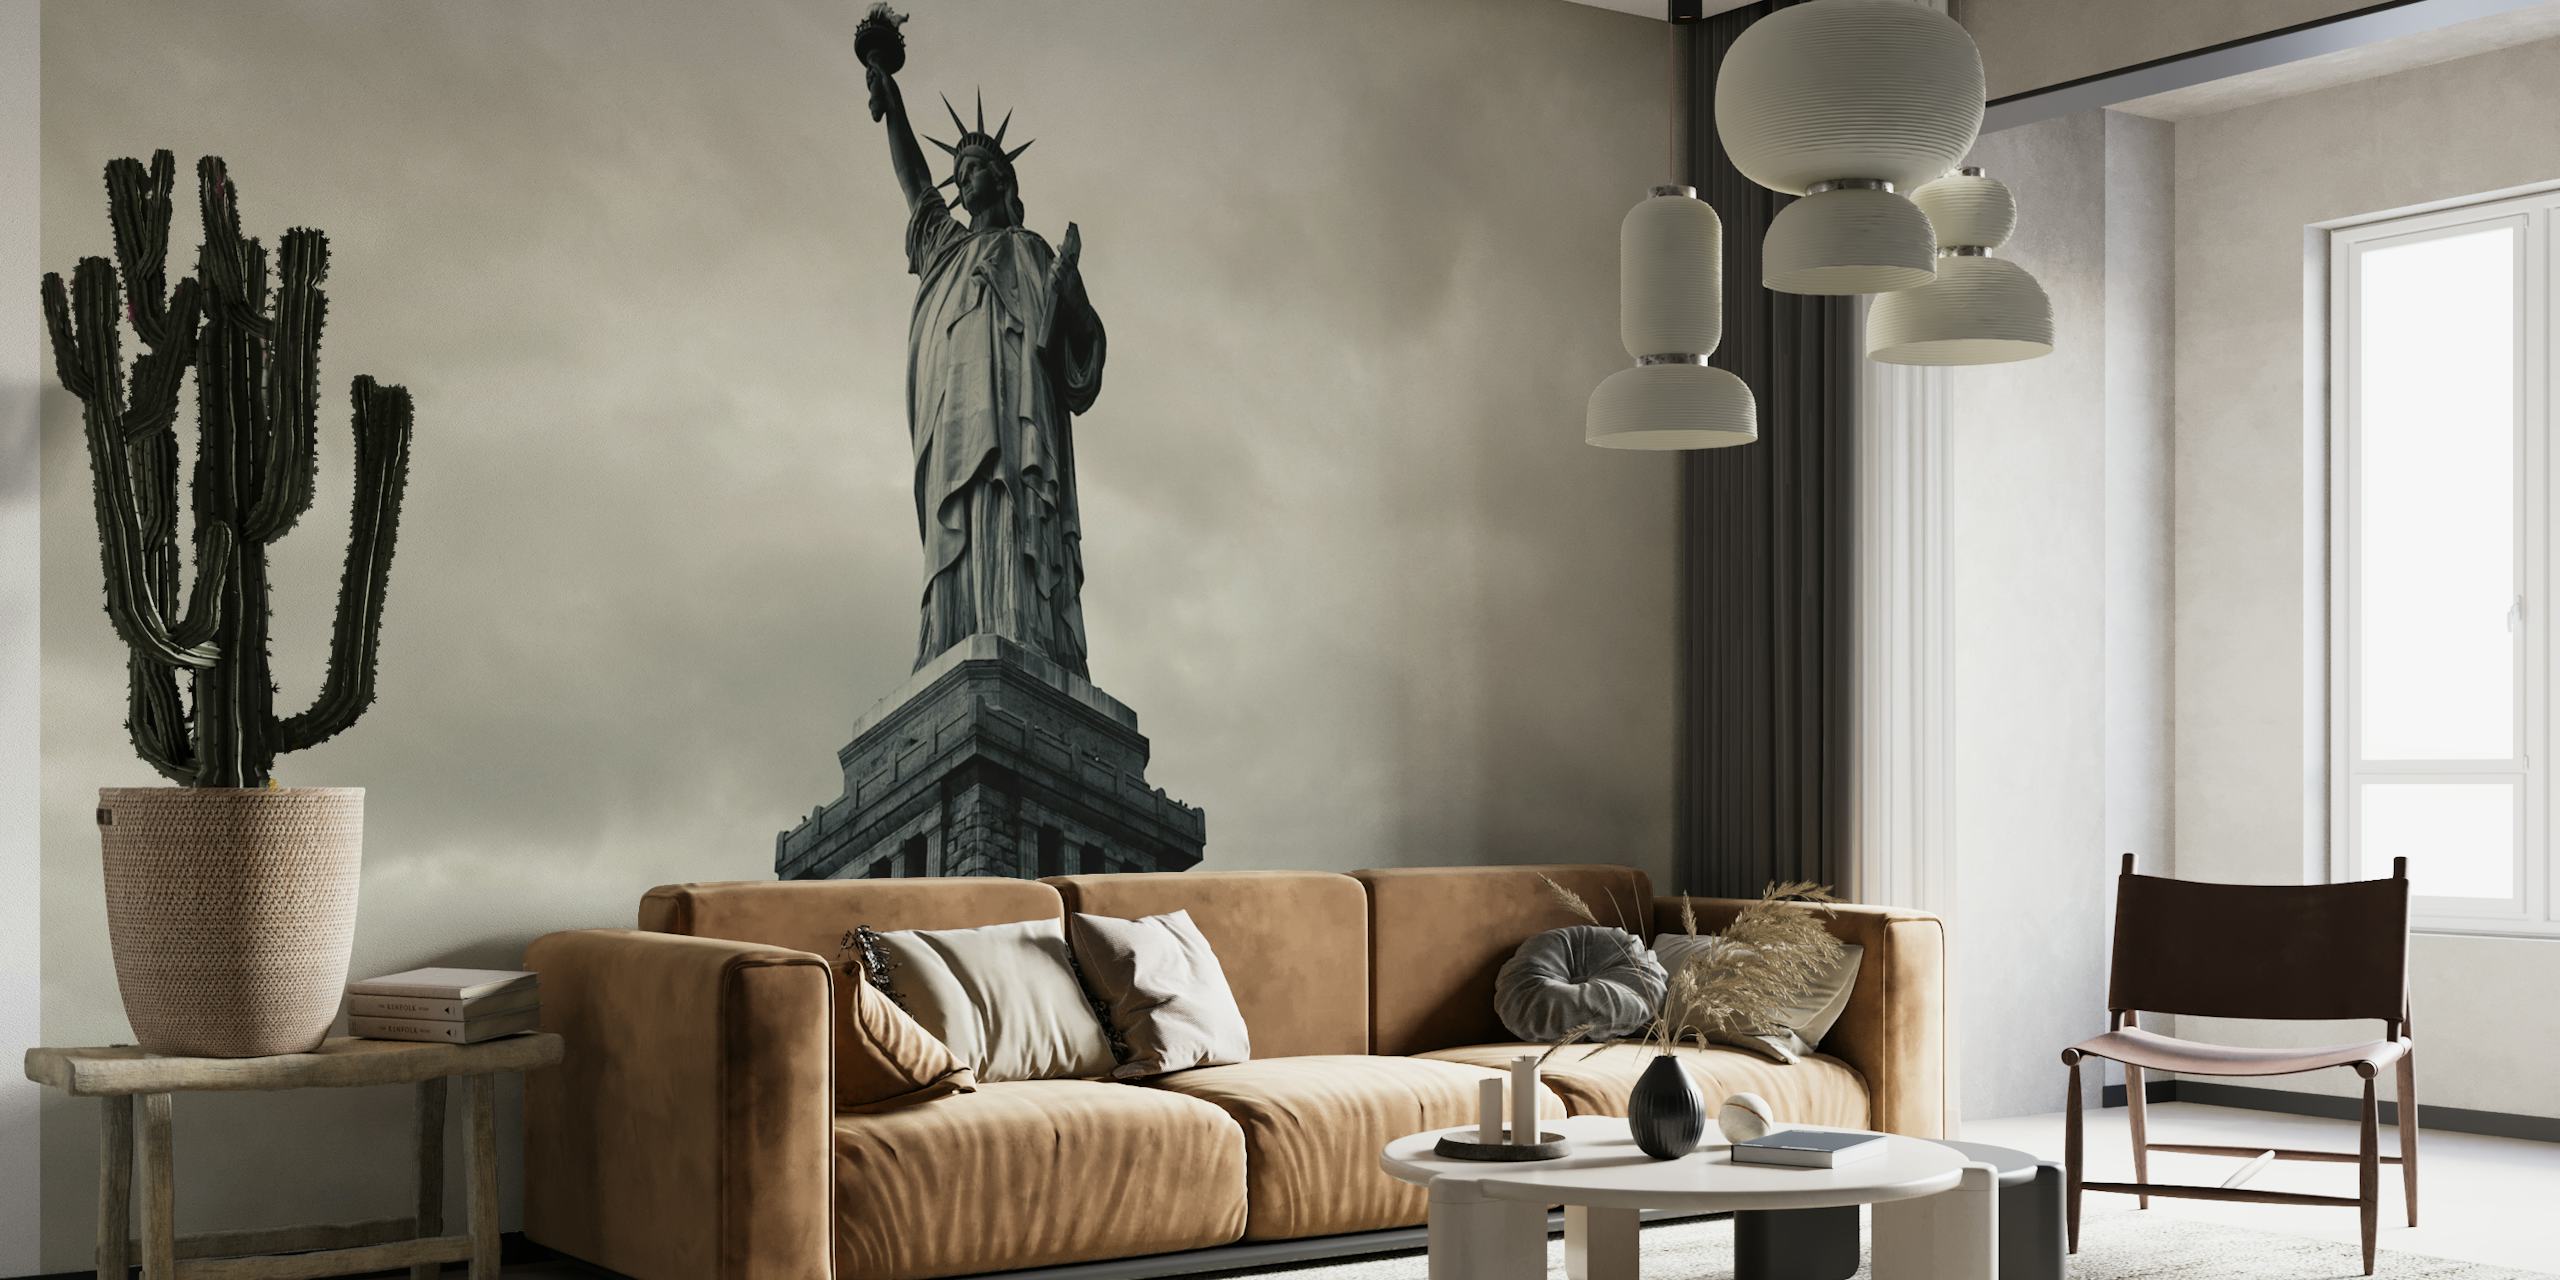 Czarno-biała fototapeta przedstawiająca kultowy amerykański posąg symbolizujący wolność i patriotyzm